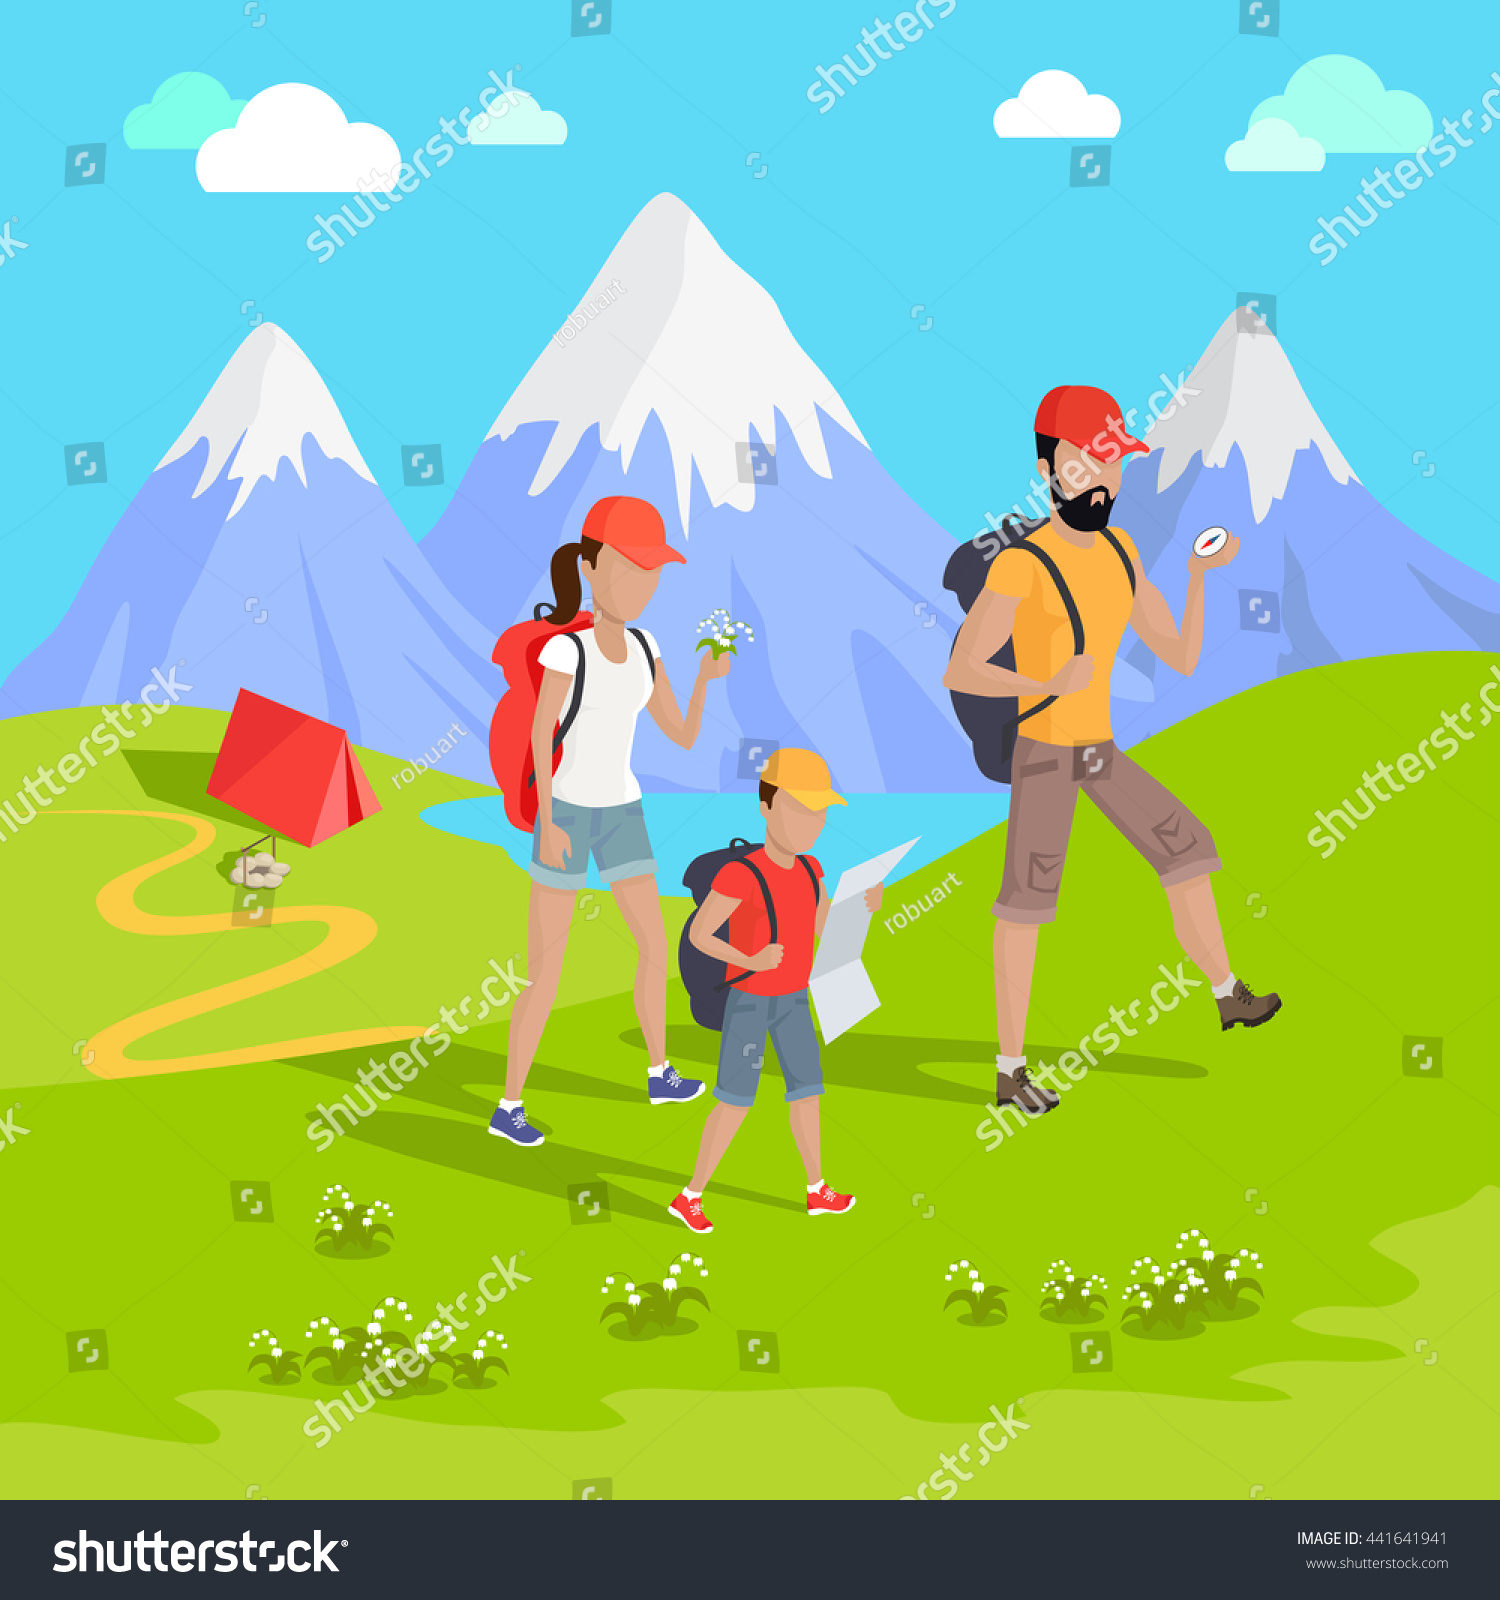 mountain walking equipment